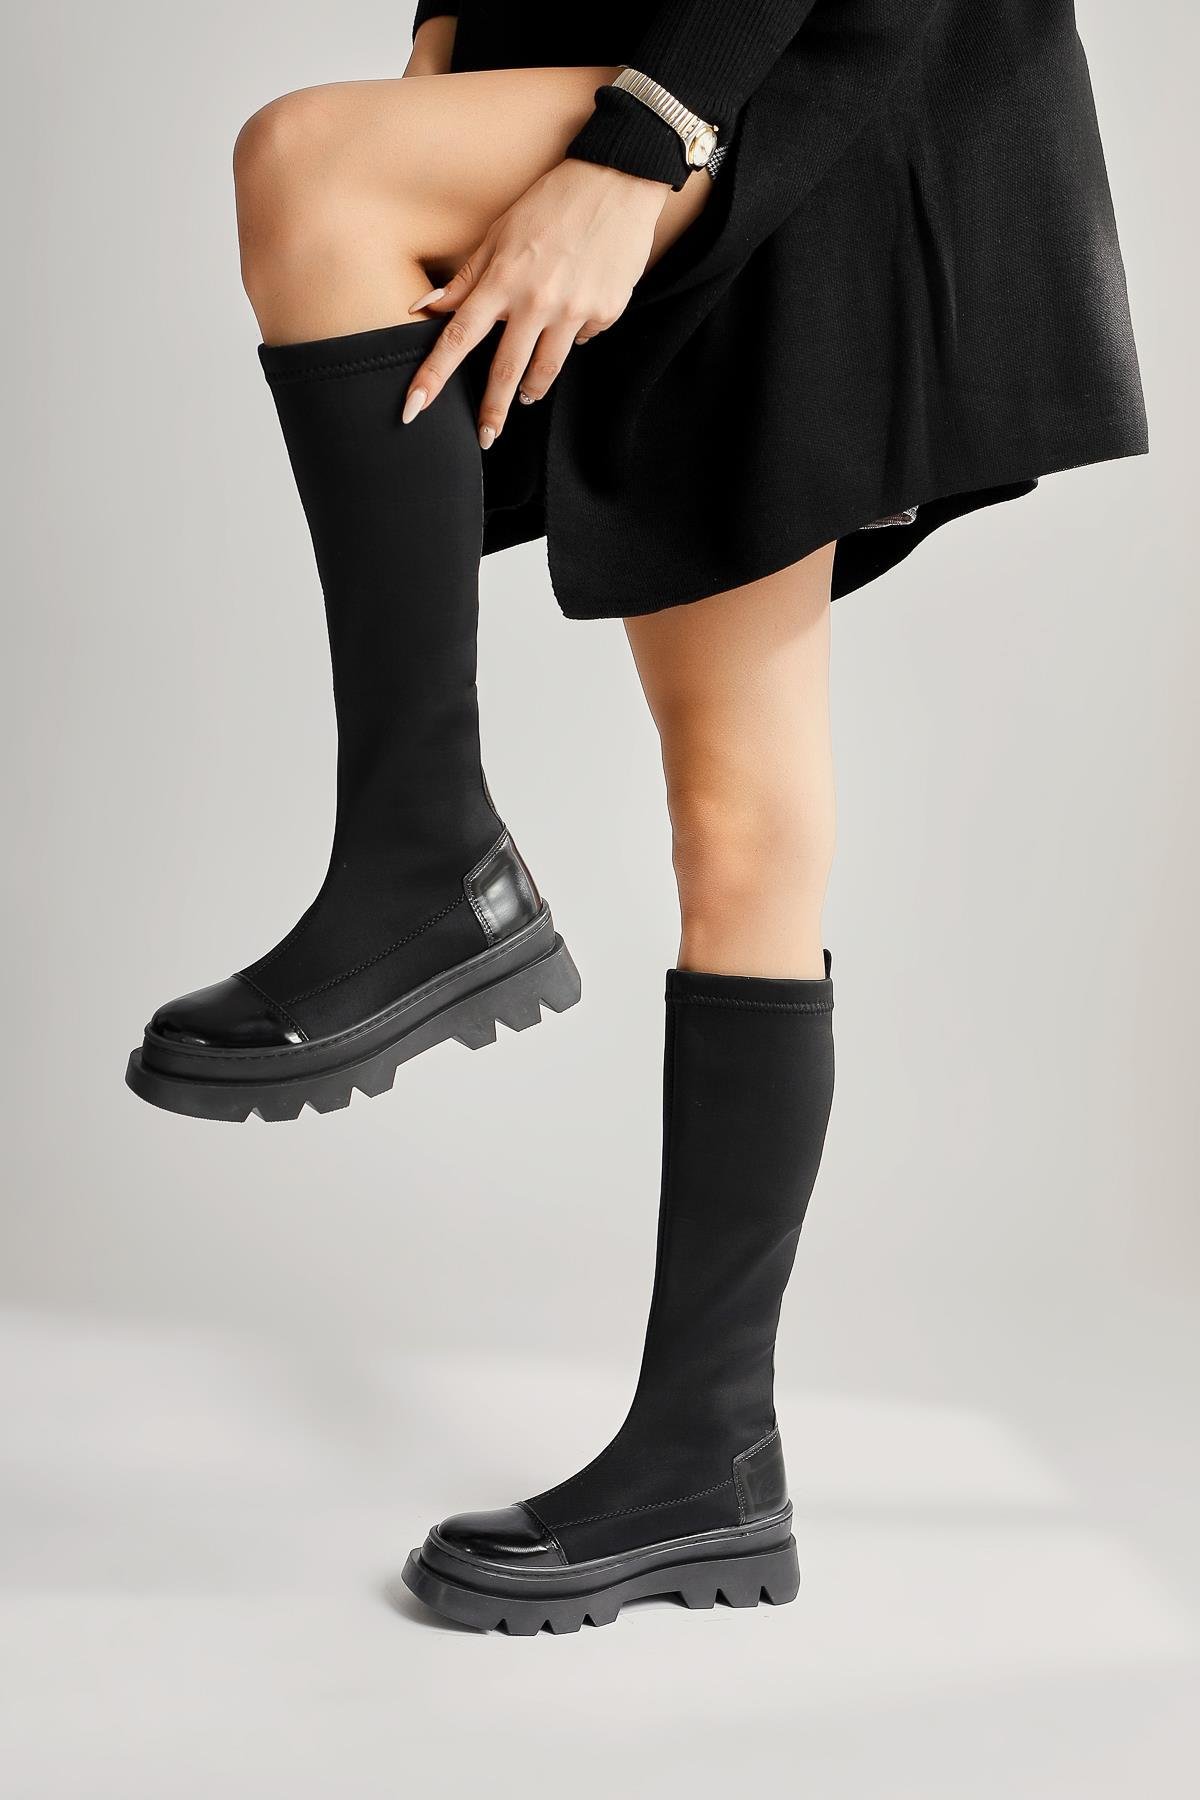 Aylen Siyah Dalgıç Kumaşlı Rugan Detaylı Çorap Çizme | Limoya.com ile  Modayı Keşfet!